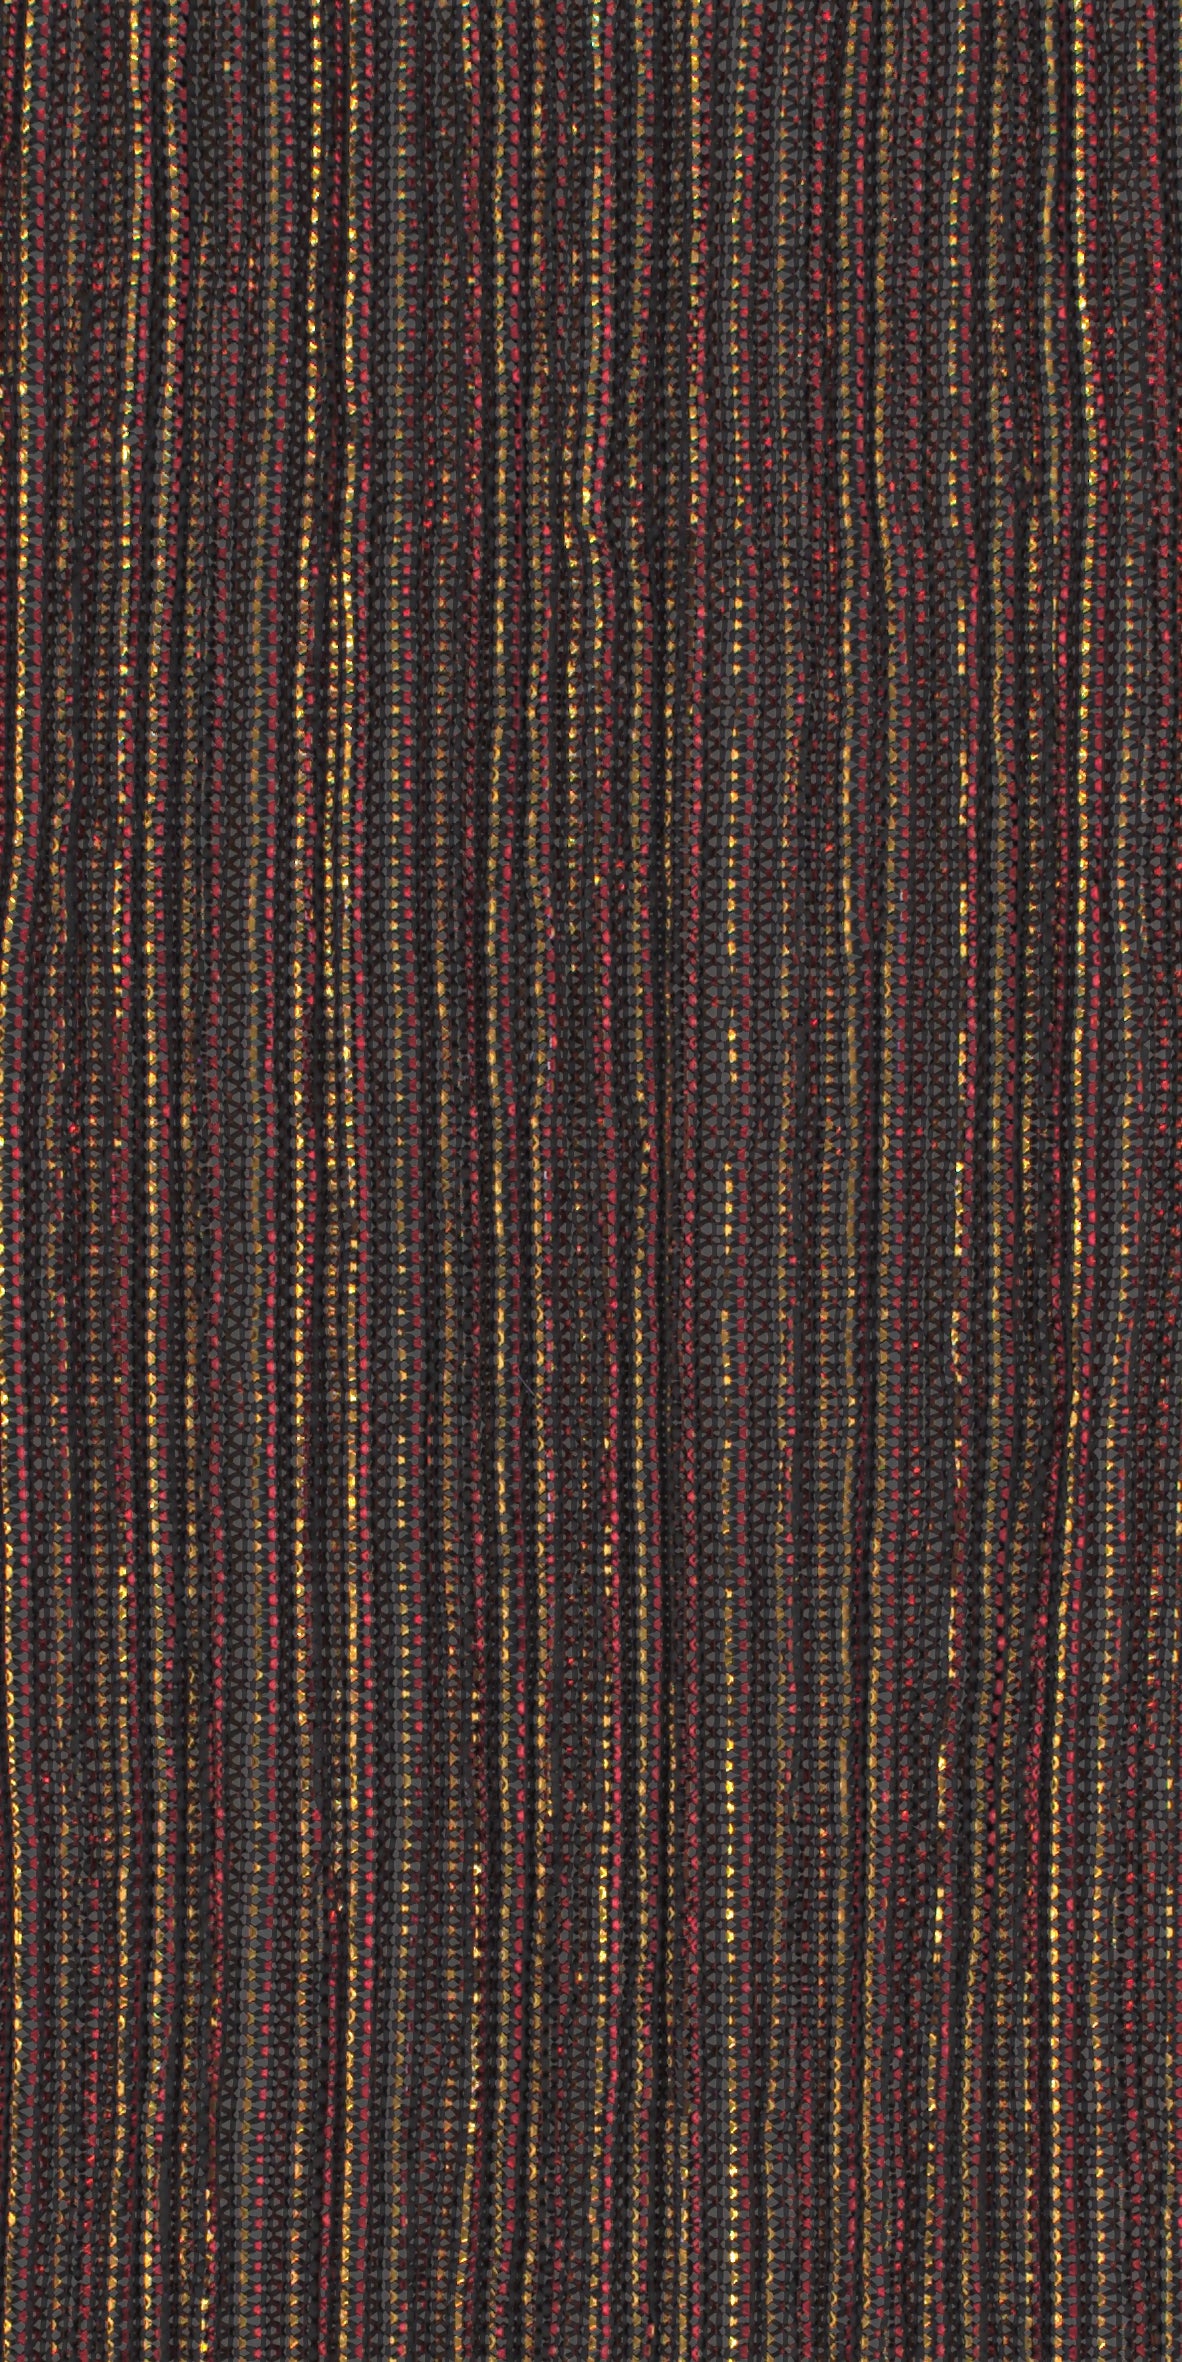 12006-24 Black Red Gold Metallic Pleat Plain Dyed Blend 126g/yd 56" black blend gold knit metallic plain dyed pleat ppl new red Metallic, Pleat - knit fabric - woven fabric - fabric company - fabric wholesale - fabric b2b - fabric factory - high quality fabric - hong kong fabric - fabric hk - acetate fabric - cotton fabric - linen fabric - metallic fabric - nylon fabric - polyester fabric - spandex fabric - chun wing hing - cwh hk - fabric worldwide ship - 針織布 - 梳織布 - 布料公司- 布料批發 - 香港布料 - 秦榮興